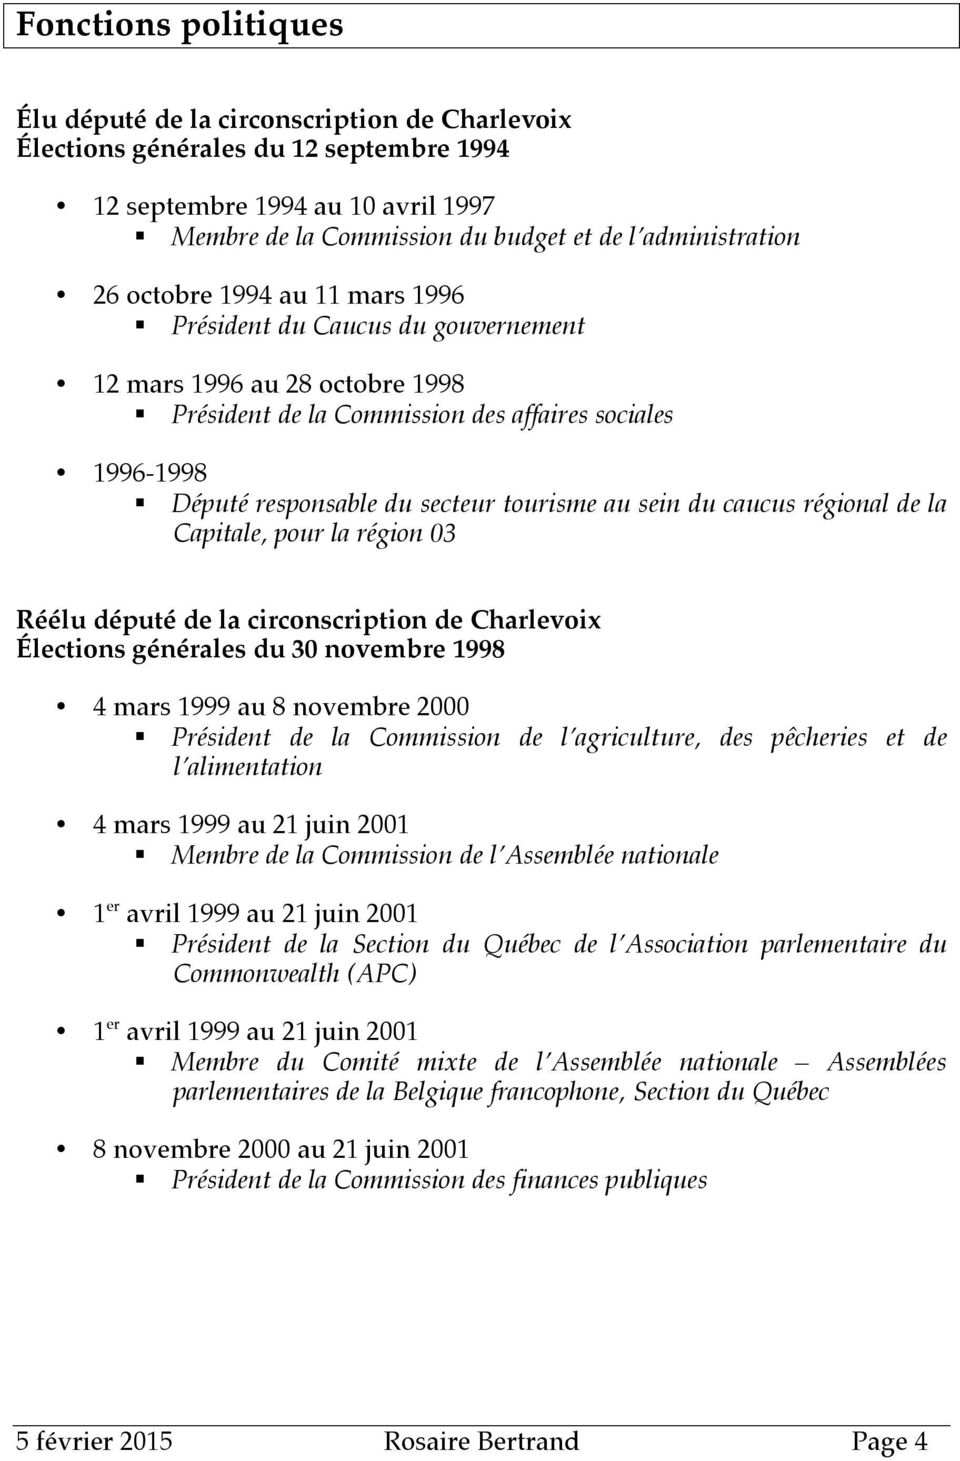 secteur tourisme au sein du caucus régional de la Capitale, pour la région 03 Réélu député de la circonscription de Charlevoix Élections générales du 30 novembre 1998 4 mars 1999 au 8 novembre 2000